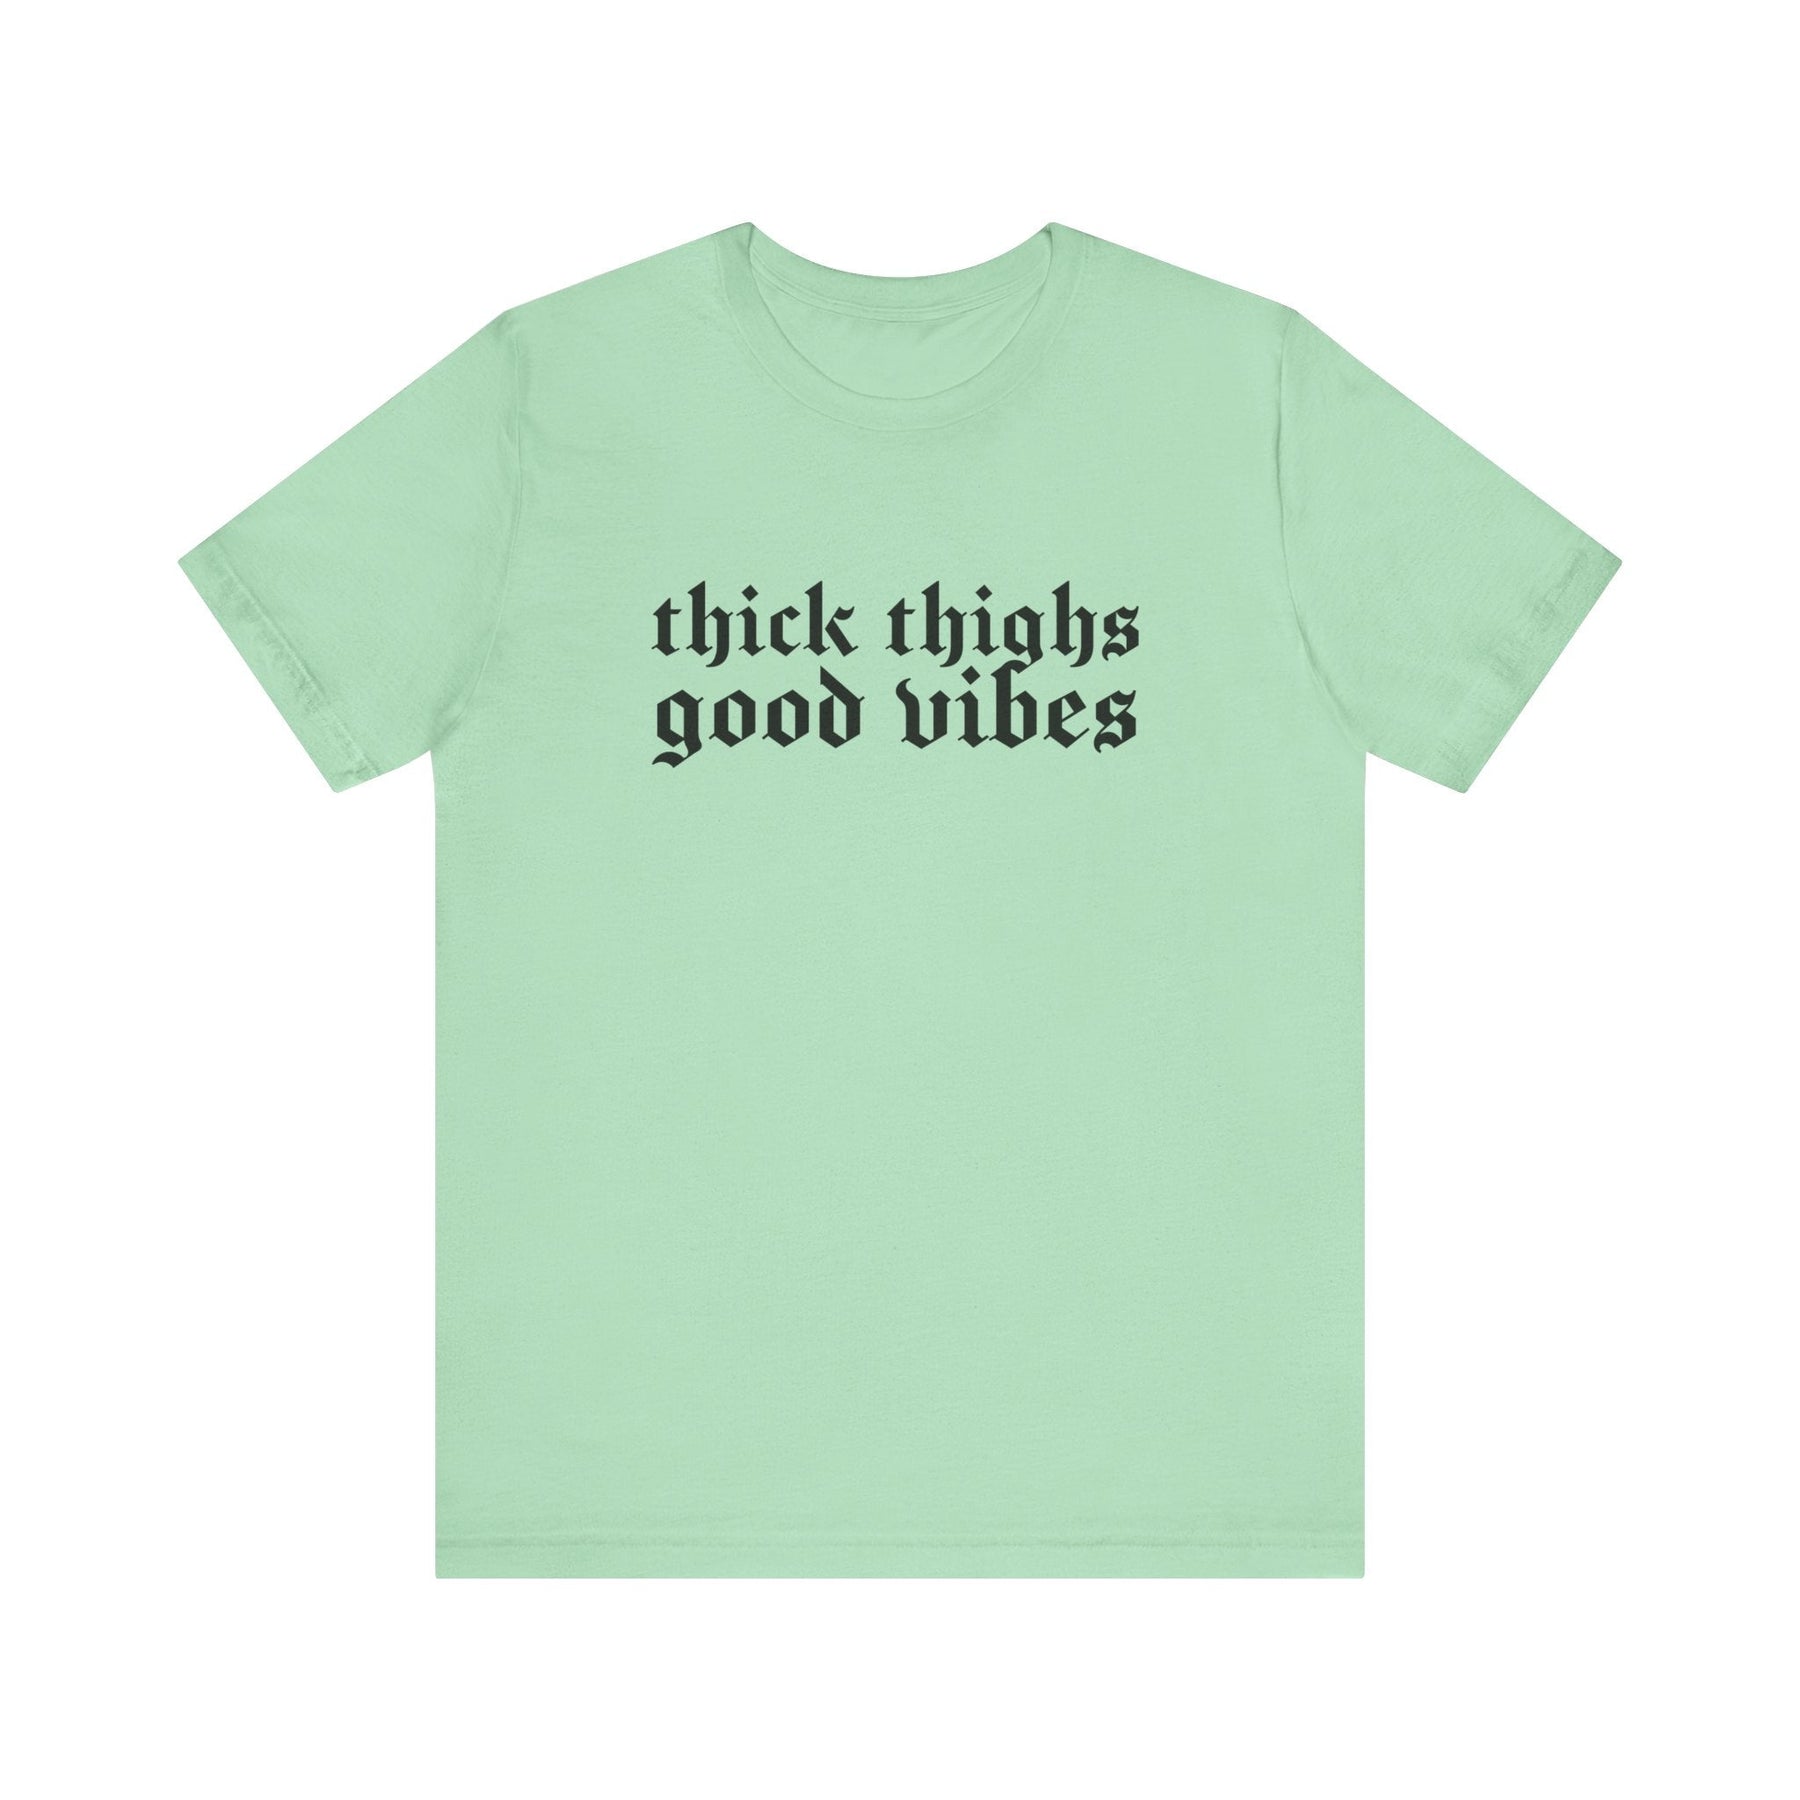 Thick Thighs, Good Vibes T-Shirt - Goth Cloth Co.T-Shirt11679561192404019678